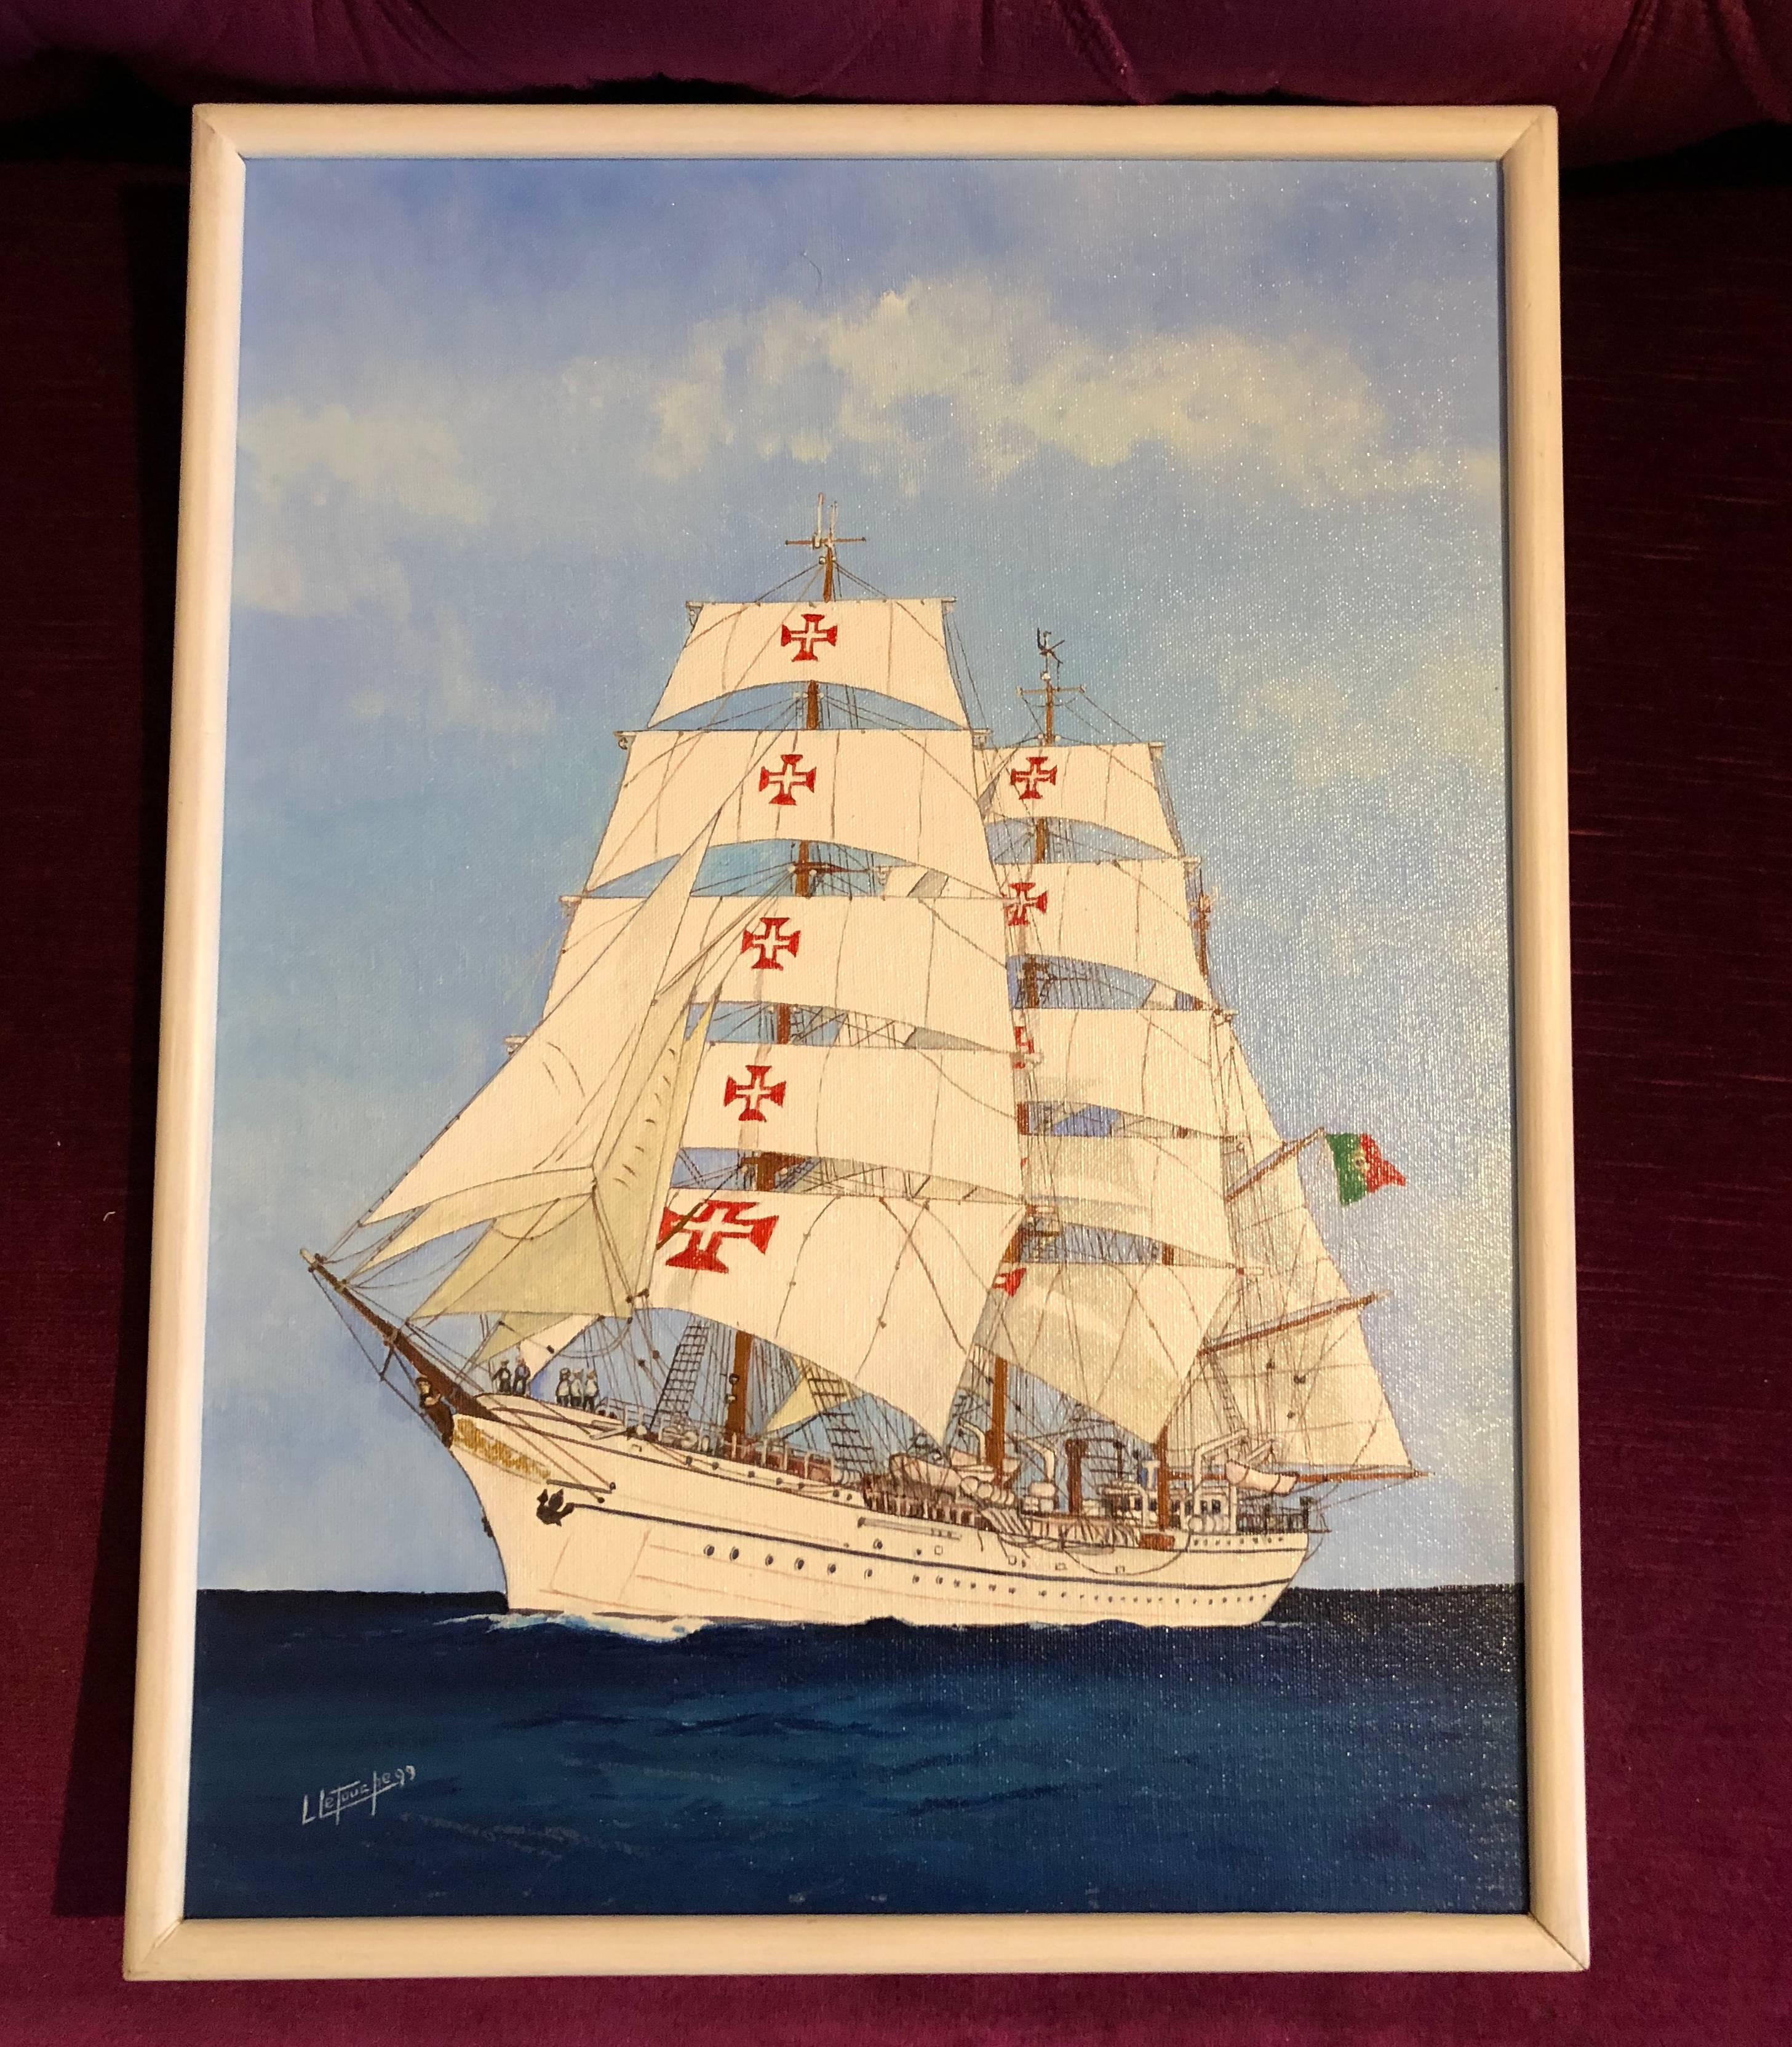 Sagres II Schiffsporträt des 20. Jahrhunderts, signiertes Ölgemälde – Painting von Louis Letouche